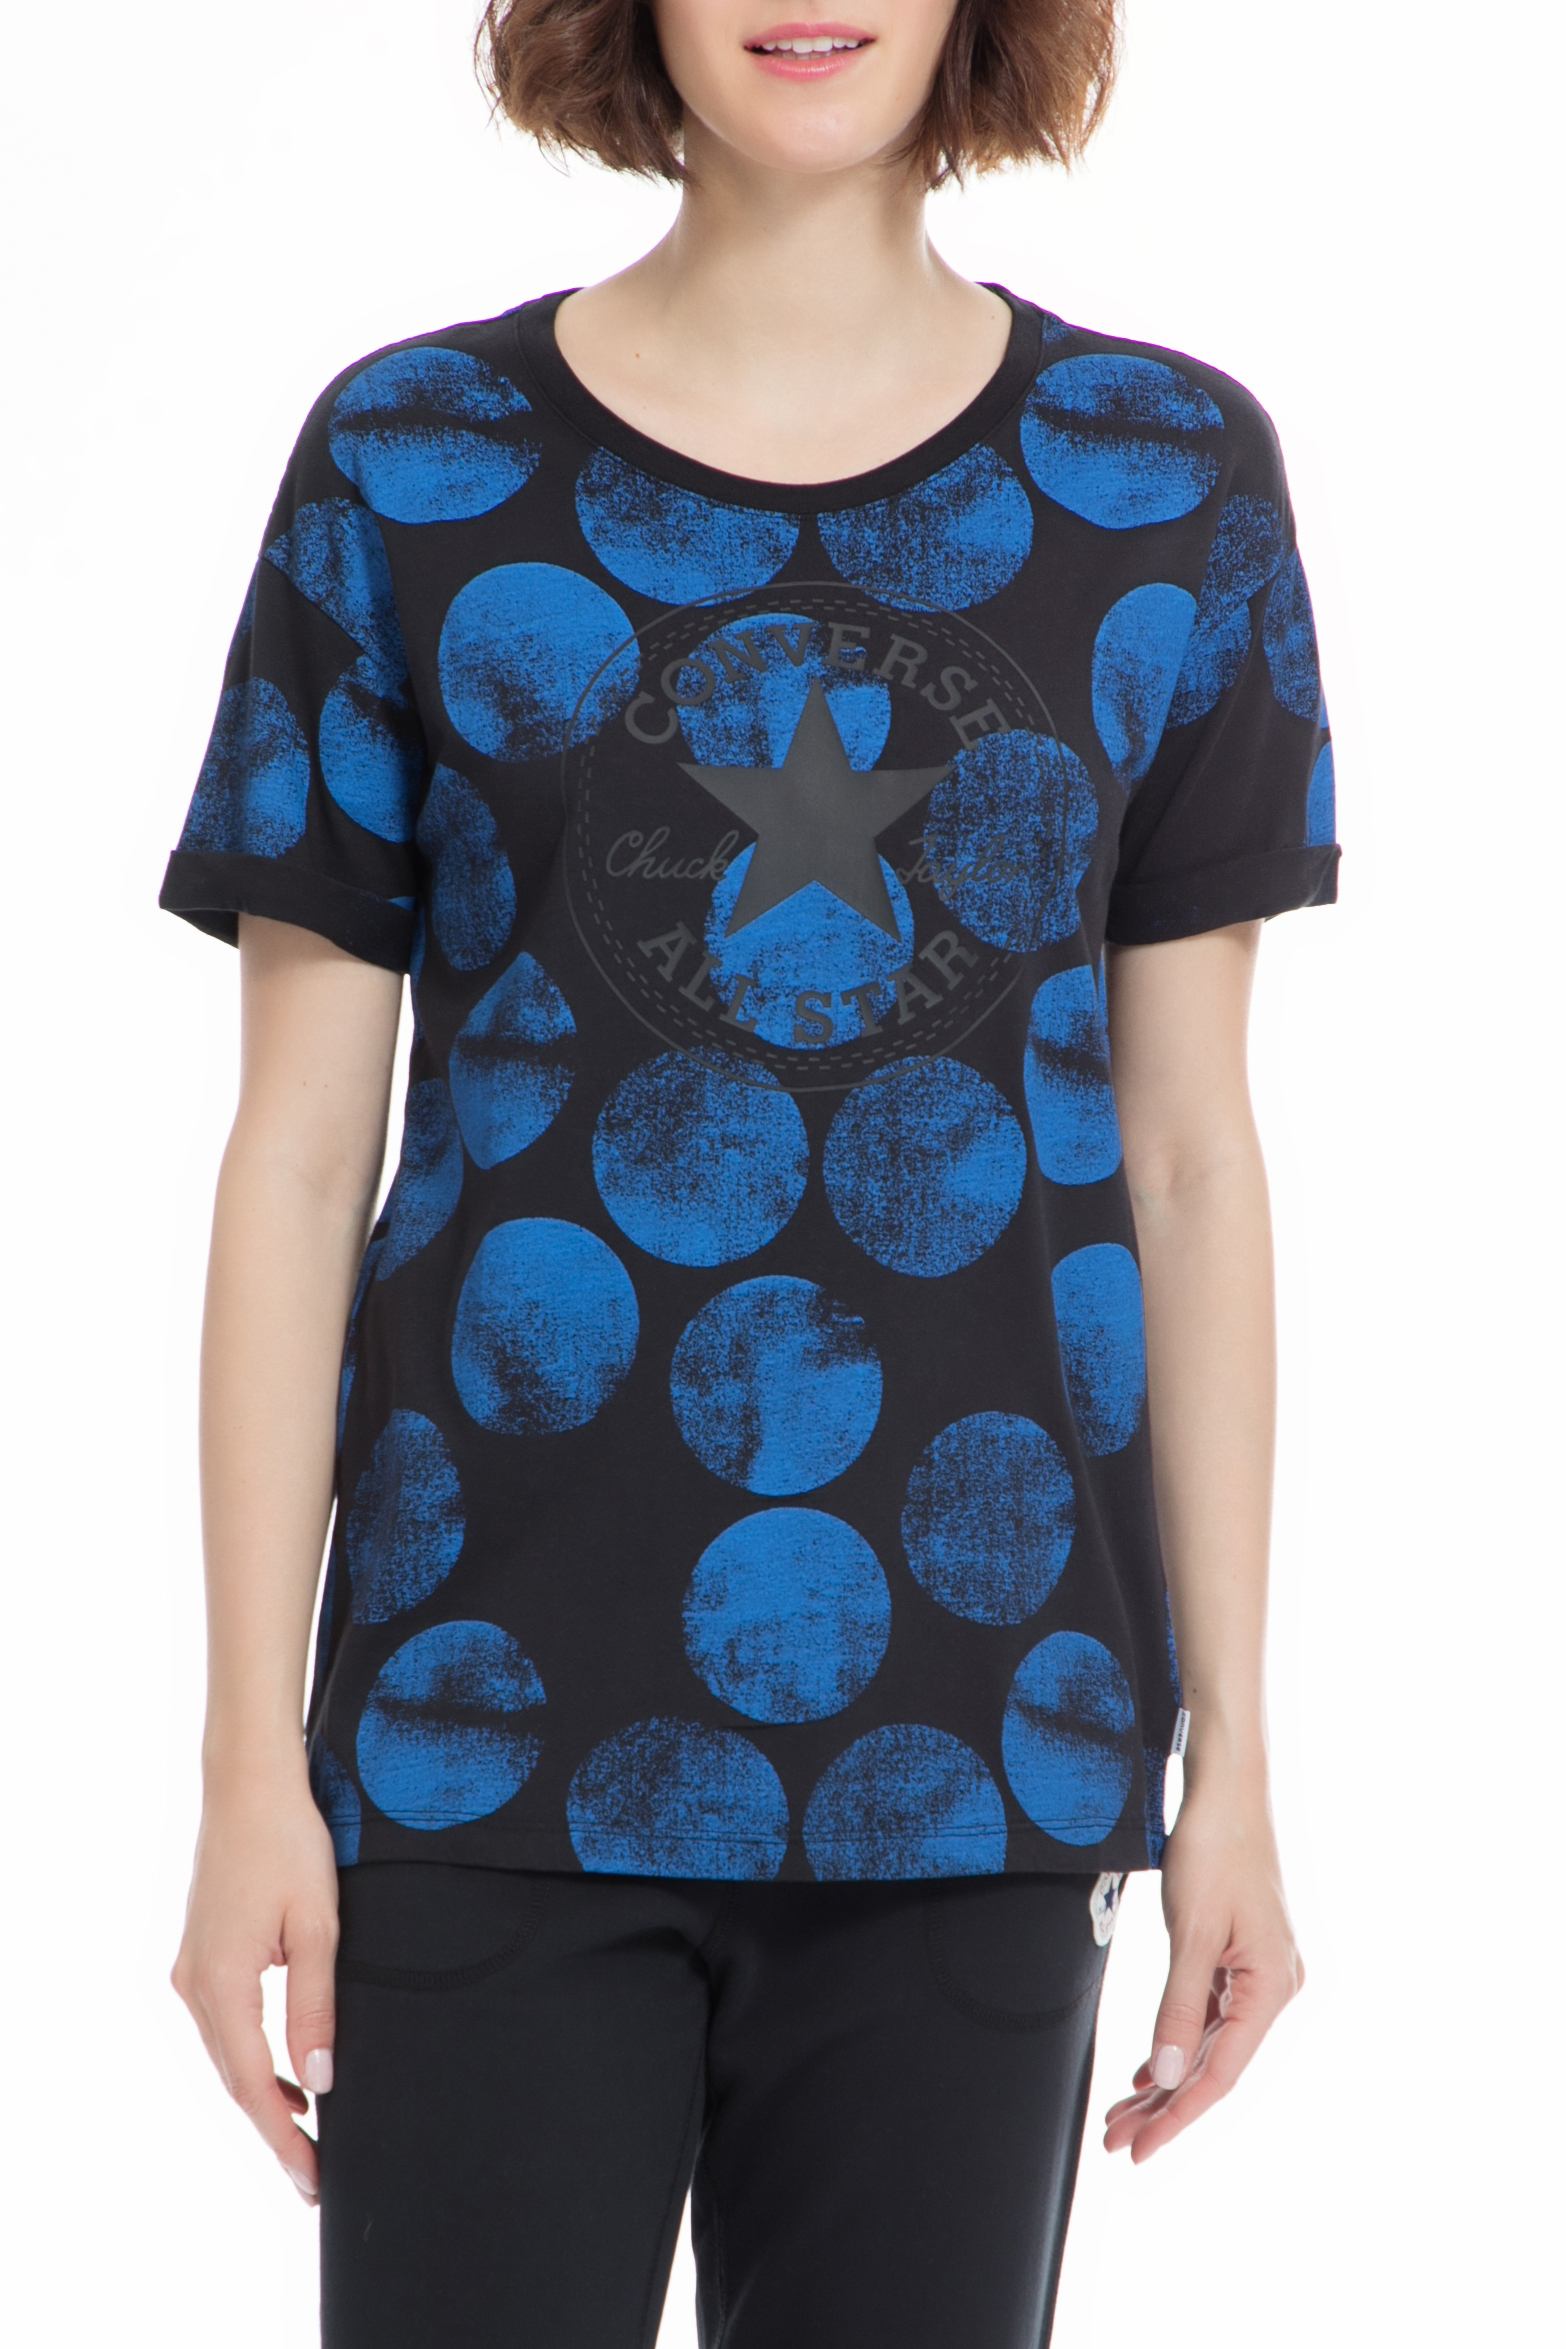 CONVERSE – Γυναικειο t-shirt CONVERSE μπλε μαυρο